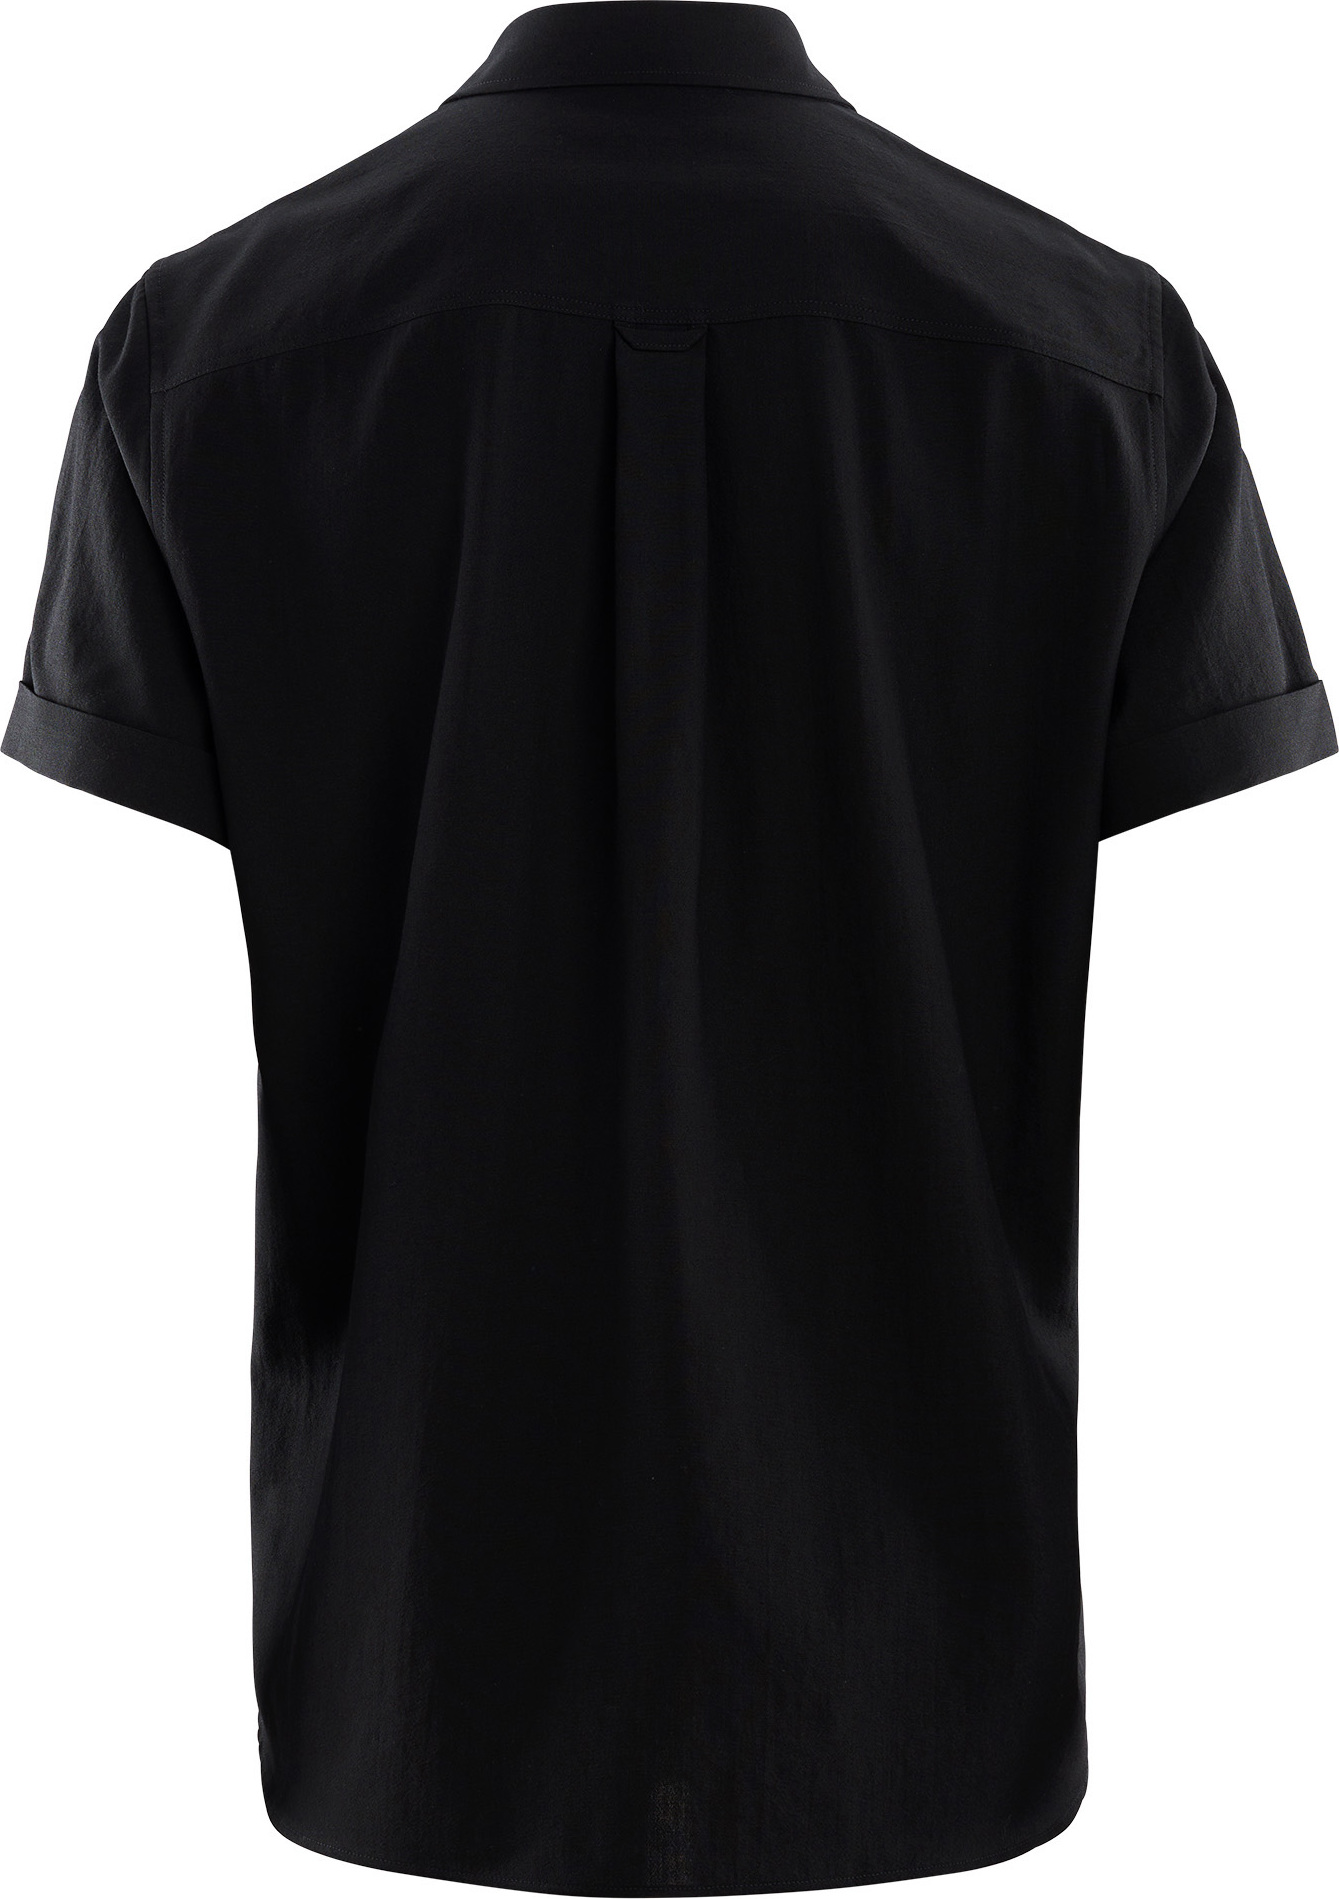 LeisureWool Short Sleeve Shirt Man Jet Black | Buy LeisureWool 